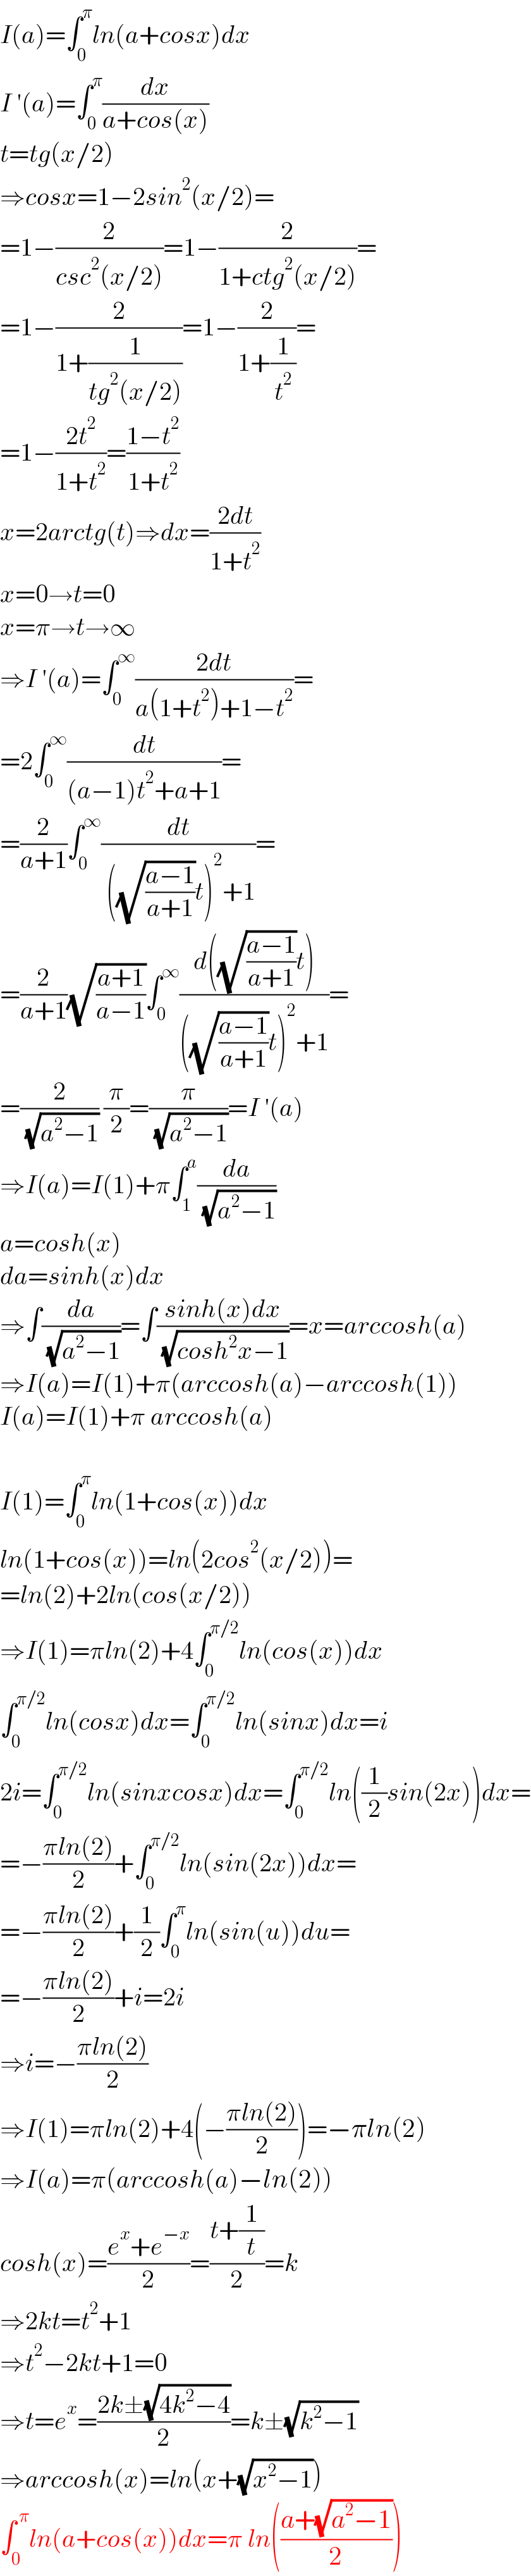 I(a)=∫_0 ^π ln(a+cosx)dx  I ′(a)=∫_0 ^π (dx/(a+cos(x)))  t=tg(x/2)  ⇒cosx=1−2sin^2 (x/2)=  =1−(2/(csc^2 (x/2)))=1−(2/(1+ctg^2 (x/2)))=  =1−(2/(1+(1/(tg^2 (x/2)))))=1−(2/(1+(1/t^2 )))=  =1−((2t^2 )/(1+t^2 ))=((1−t^2 )/(1+t^2 ))  x=2arctg(t)⇒dx=((2dt)/(1+t^2 ))  x=0→t=0  x=π→t→∞  ⇒I ′(a)=∫_0 ^∞ ((2dt)/(a(1+t^2 )+1−t^2 ))=  =2∫_0 ^∞ (dt/((a−1)t^2 +a+1))=  =(2/(a+1))∫_0 ^∞ (dt/( ((√((a−1)/(a+1)))t)^2 +1))=  =(2/(a+1))(√((a+1)/(a−1)))∫_0 ^∞ ((d((√((a−1)/(a+1)))t))/(((√((a−1)/(a+1)))t)^2 +1))=  =(2/( (√(a^2 −1)))) (π/2)=(π/( (√(a^2 −1))))=I ′(a)  ⇒I(a)=I(1)+π∫_1 ^a (da/( (√(a^2 −1))))  a=cosh(x)  da=sinh(x)dx  ⇒∫(da/( (√(a^2 −1))))=∫((sinh(x)dx)/( (√(cosh^2 x−1))))=x=arccosh(a)  ⇒I(a)=I(1)+π(arccosh(a)−arccosh(1))  I(a)=I(1)+π arccosh(a)    I(1)=∫_0 ^π ln(1+cos(x))dx  ln(1+cos(x))=ln(2cos^2 (x/2))=  =ln(2)+2ln(cos(x/2))  ⇒I(1)=πln(2)+4∫_0 ^(π/2) ln(cos(x))dx  ∫_0 ^(π/2) ln(cosx)dx=∫_0 ^(π/2) ln(sinx)dx=i  2i=∫_0 ^(π/2) ln(sinxcosx)dx=∫_0 ^(π/2) ln((1/2)sin(2x))dx=  =−((πln(2))/2)+∫_0 ^(π/2) ln(sin(2x))dx=  =−((πln(2))/2)+(1/2)∫_0 ^π ln(sin(u))du=  =−((πln(2))/2)+i=2i  ⇒i=−((πln(2))/2)  ⇒I(1)=πln(2)+4(−((πln(2))/2))=−πln(2)  ⇒I(a)=π(arccosh(a)−ln(2))  cosh(x)=((e^x +e^(−x) )/2)=((t+(1/t))/2)=k  ⇒2kt=t^2 +1  ⇒t^2 −2kt+1=0  ⇒t=e^x =((2k±(√(4k^2 −4)))/2)=k±(√(k^2 −1))  ⇒arccosh(x)=ln(x+(√(x^2 −1)))  ∫_0 ^( π) ln(a+cos(x))dx=π ln(((a+(√(a^2 −1)))/2))  